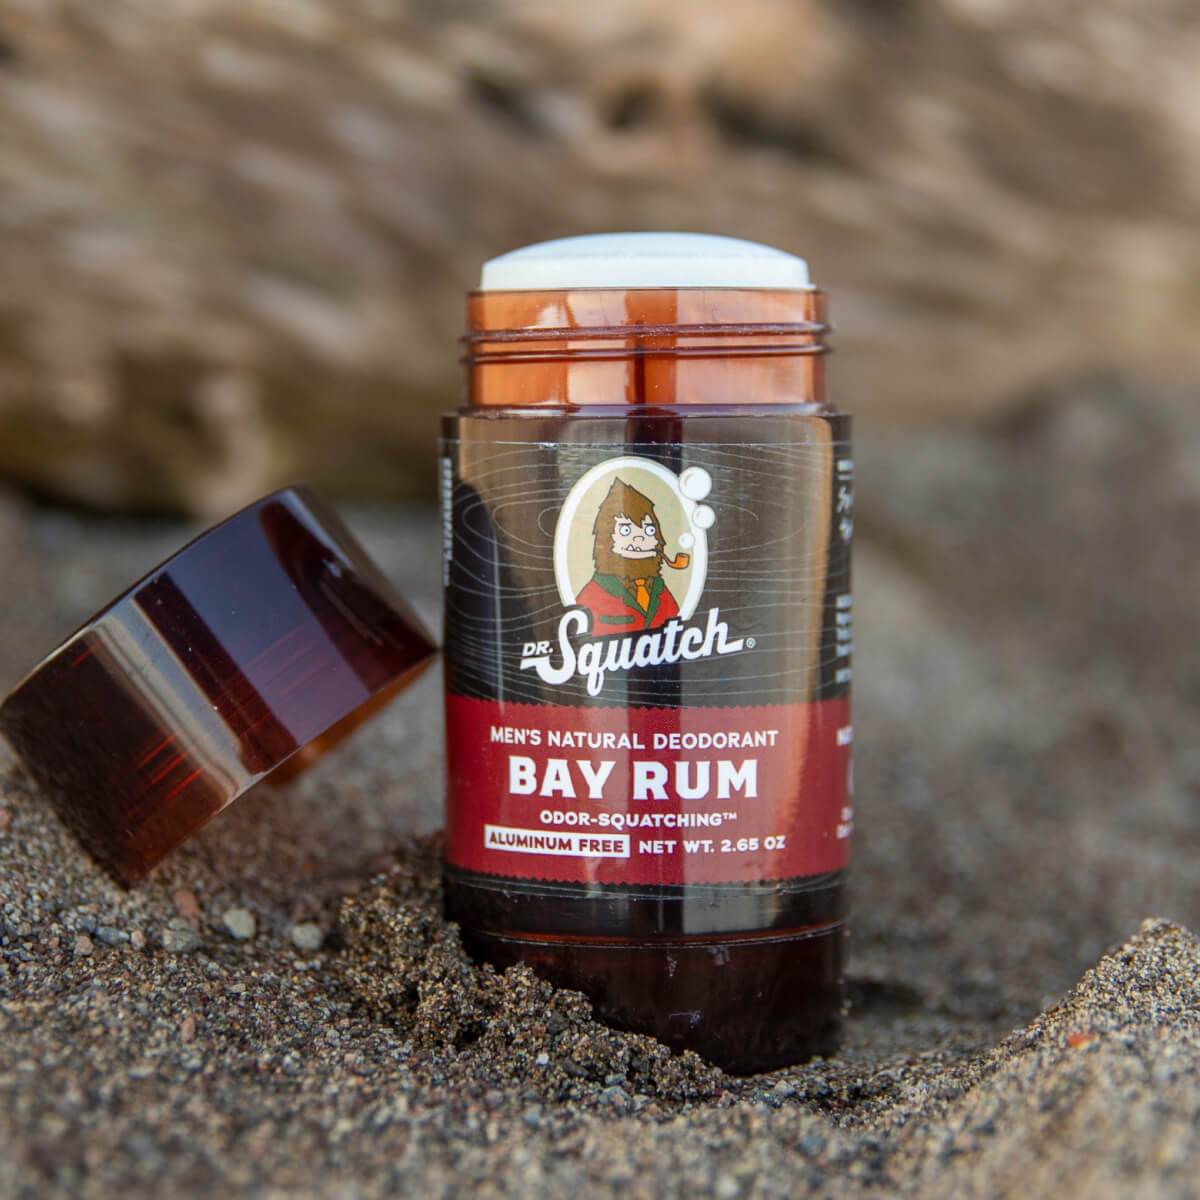 Dr. Squatch Men's Natural Deodorant Bay Rum